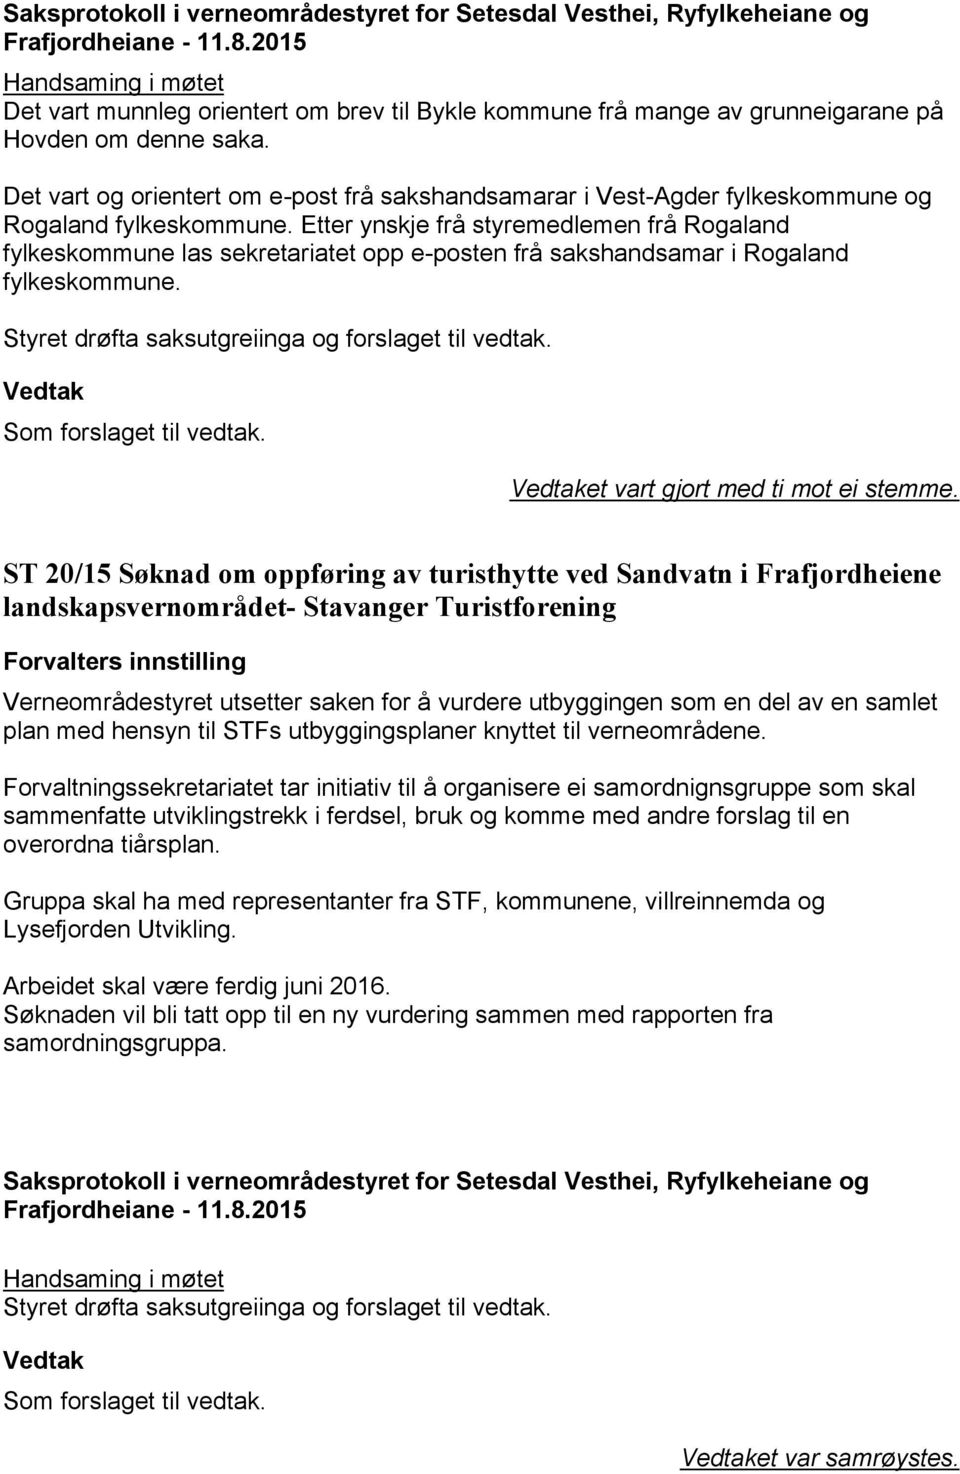 Etter ynskje frå styremedlemen frå Rogaland fylkeskommune las sekretariatet opp e-posten frå sakshandsamar i Rogaland fylkeskommune. et vart gjort med ti mot ei stemme.